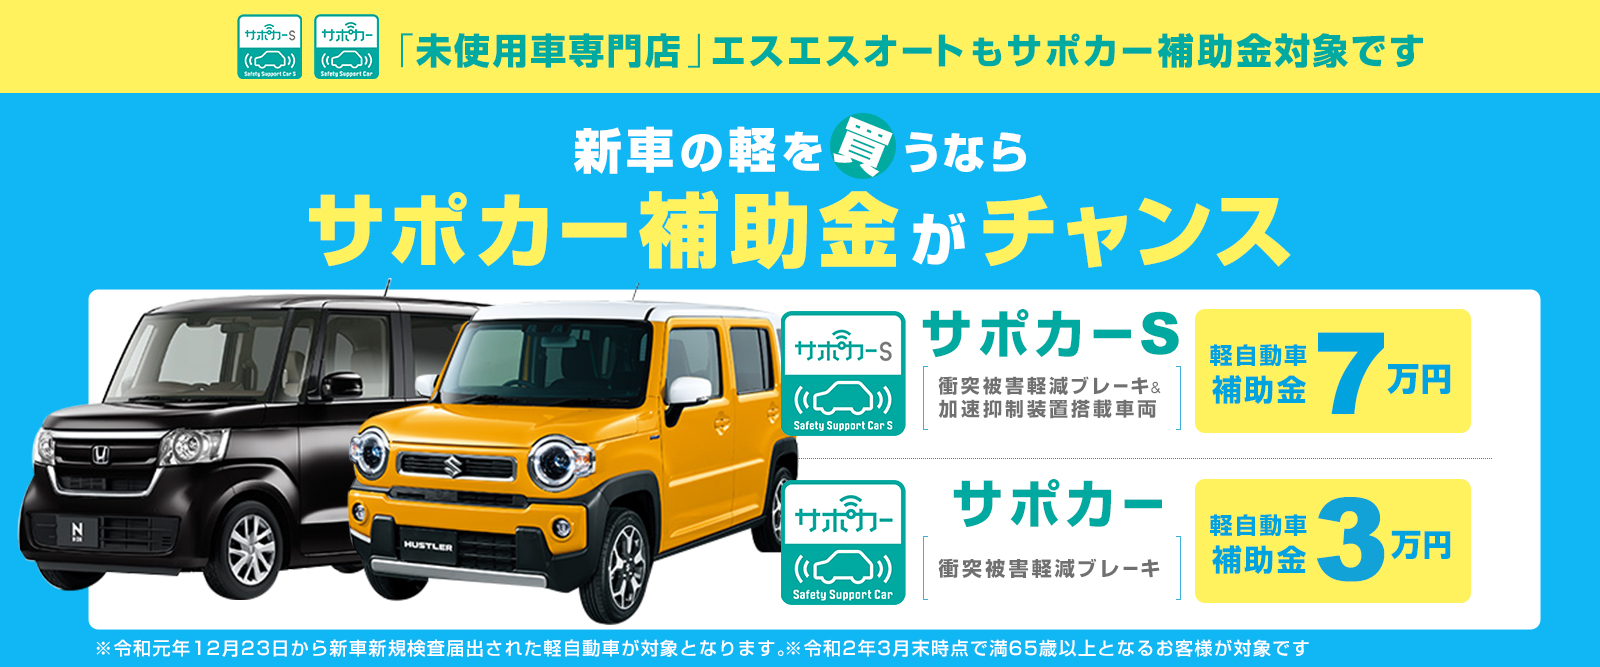 エスエスオート 軽未使用車専門店 軽自動車なら愛媛四国中央最大級150台在庫